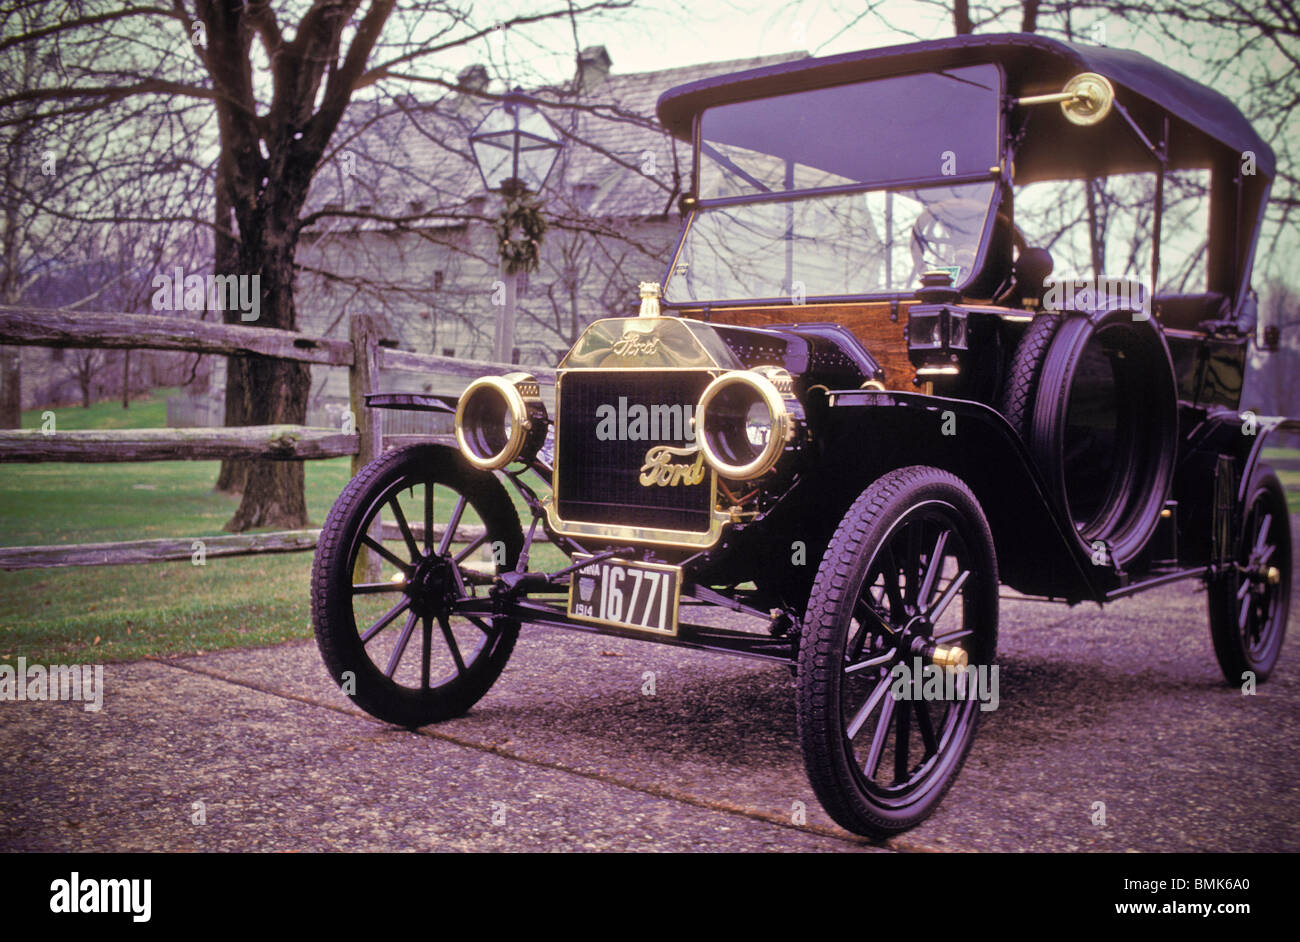 1917 model t wheels